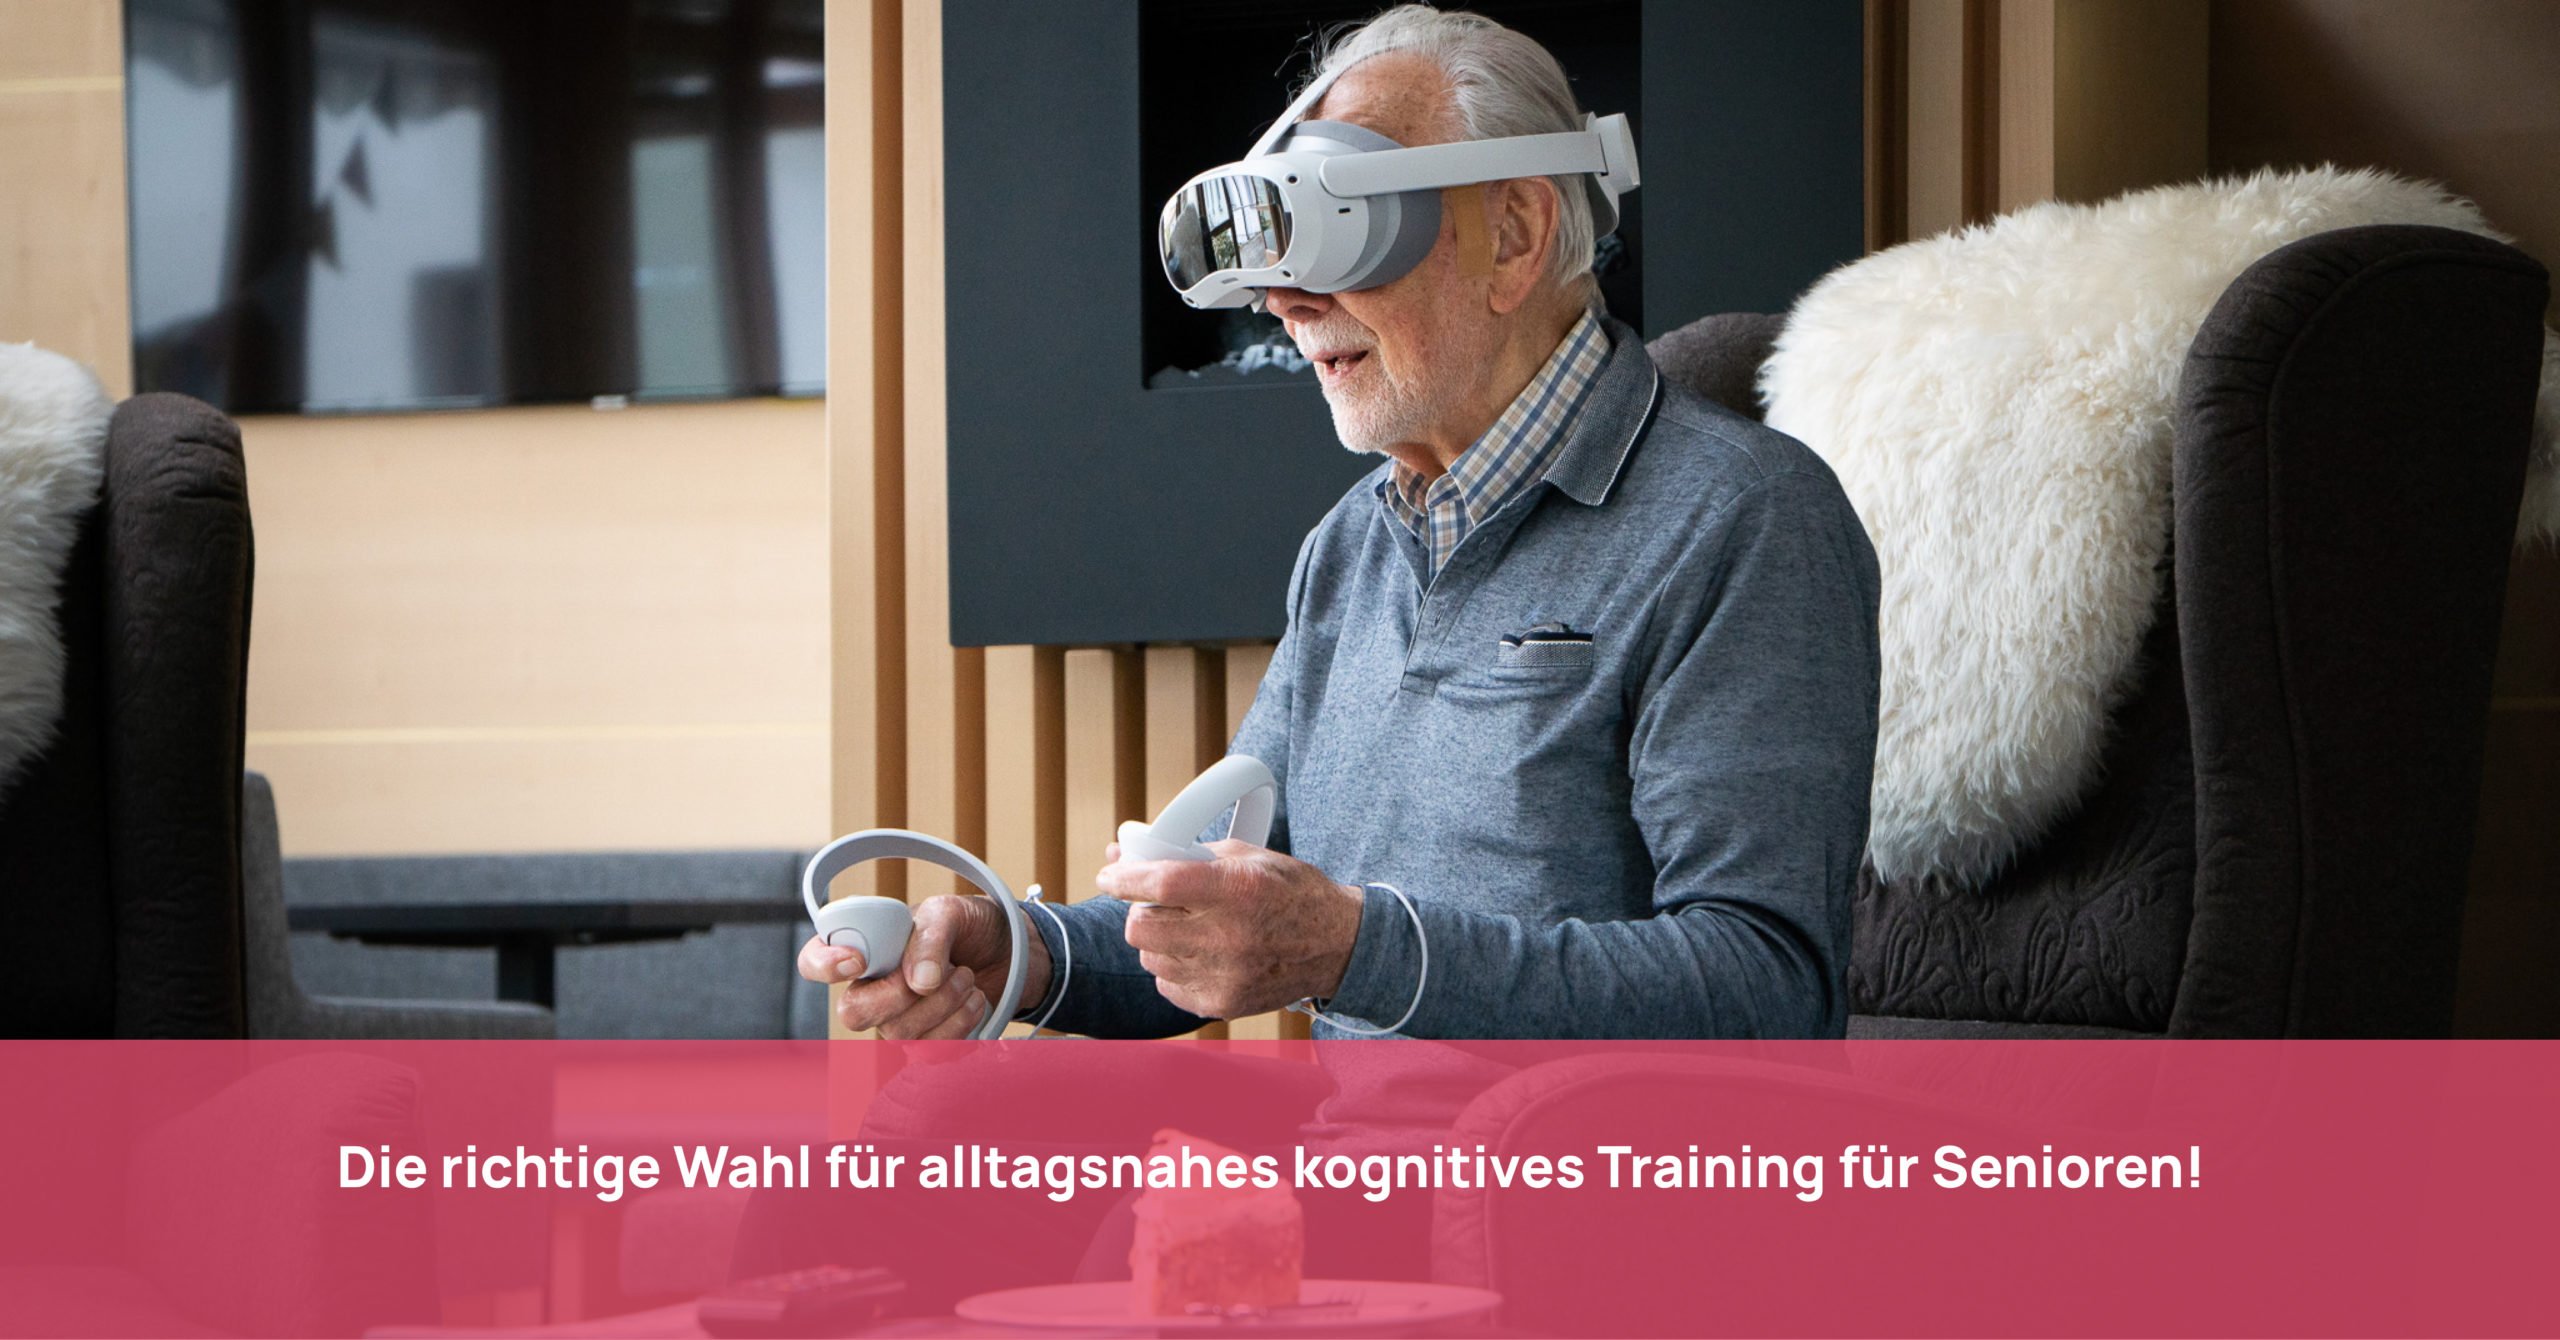 Senior trainiert auf dem Sofa mit VR-Brille und Controllern